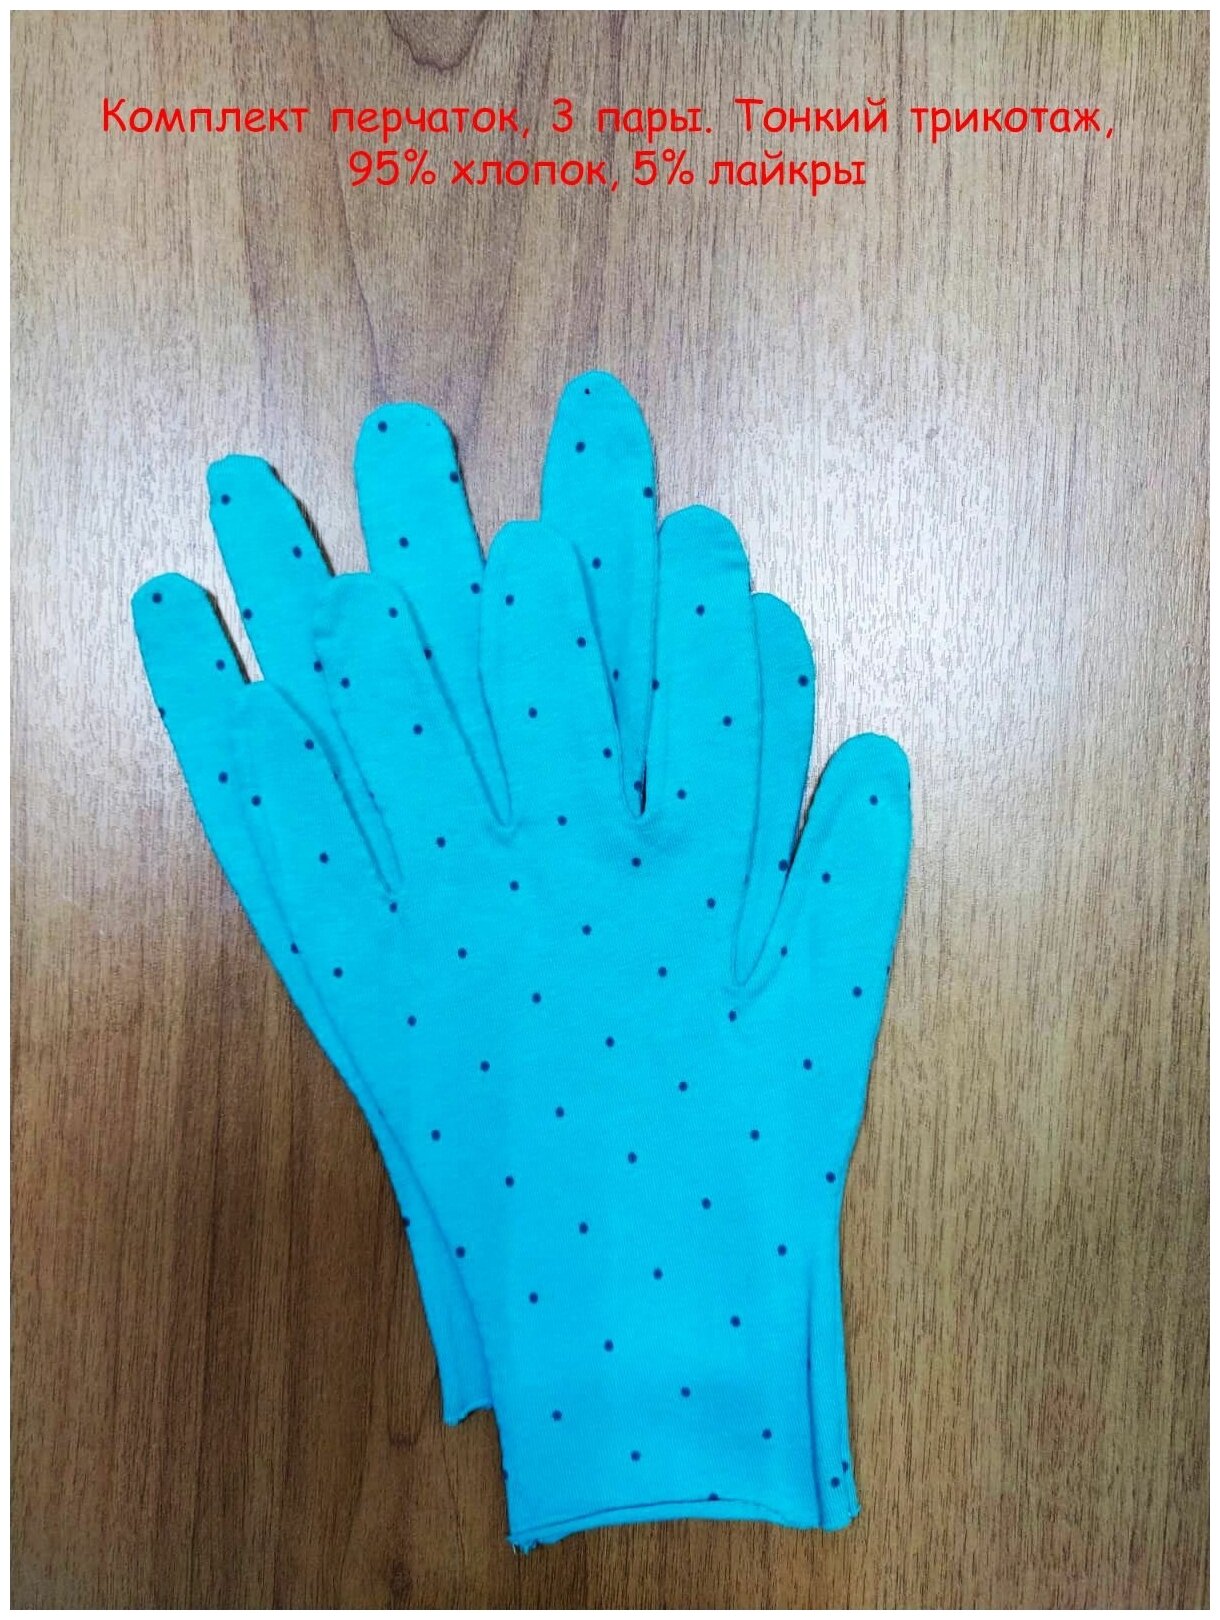 Тонкие хлопковые перчатки, размер M,3 пары.